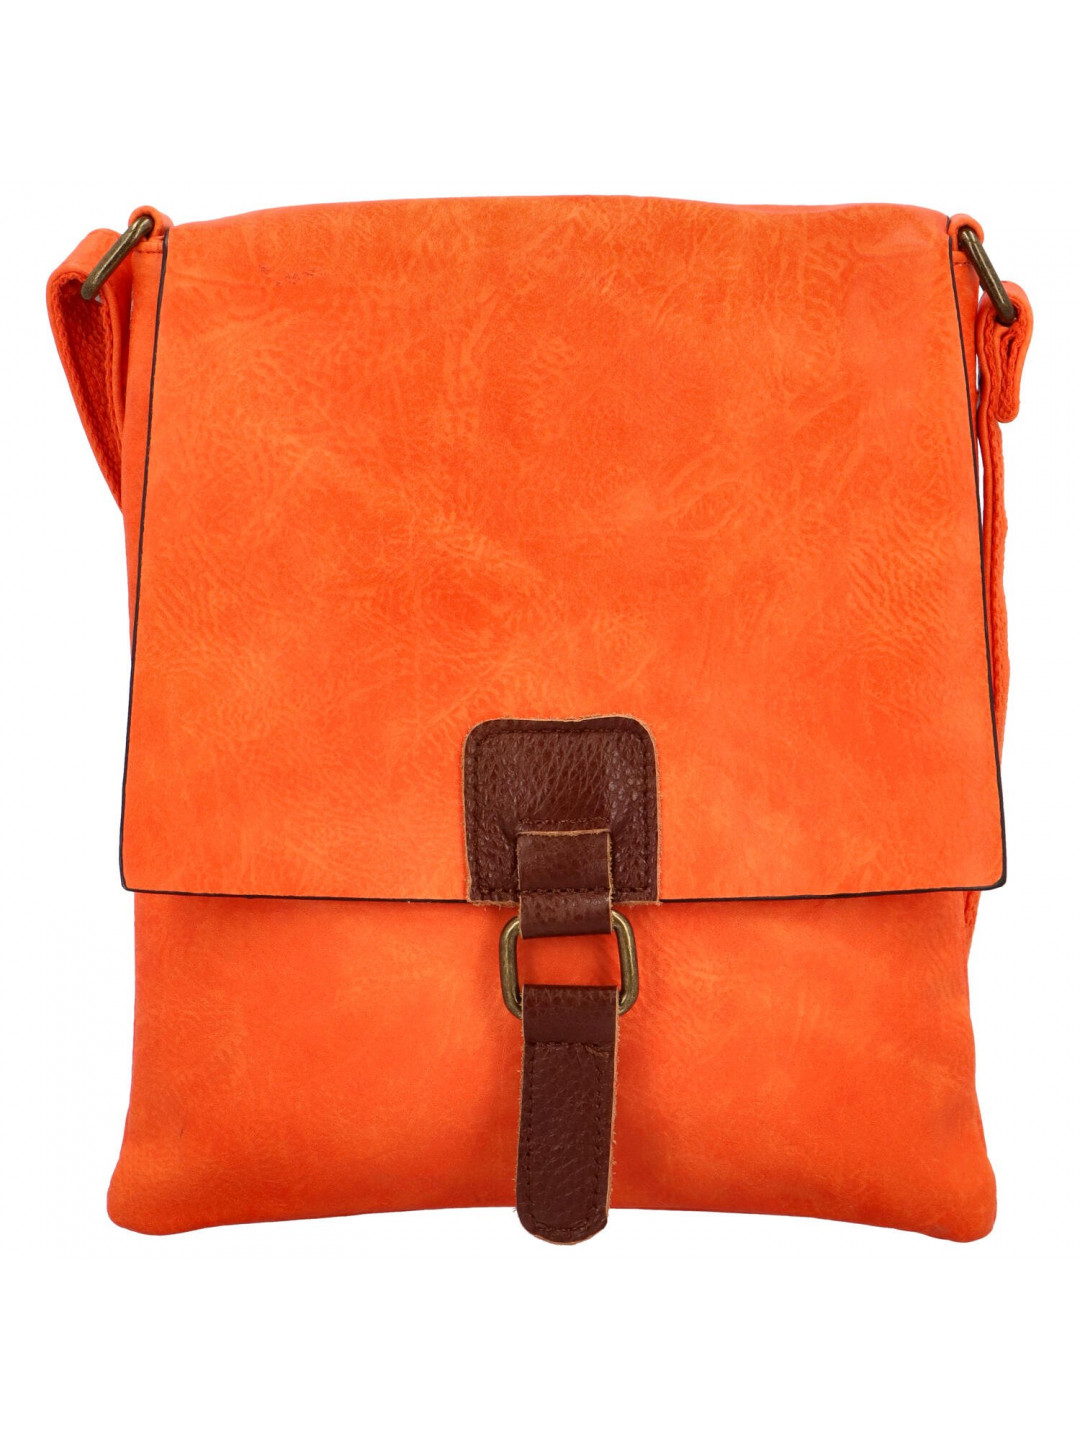 Elegantní dámský kabelko-batoh Mikki oranžová